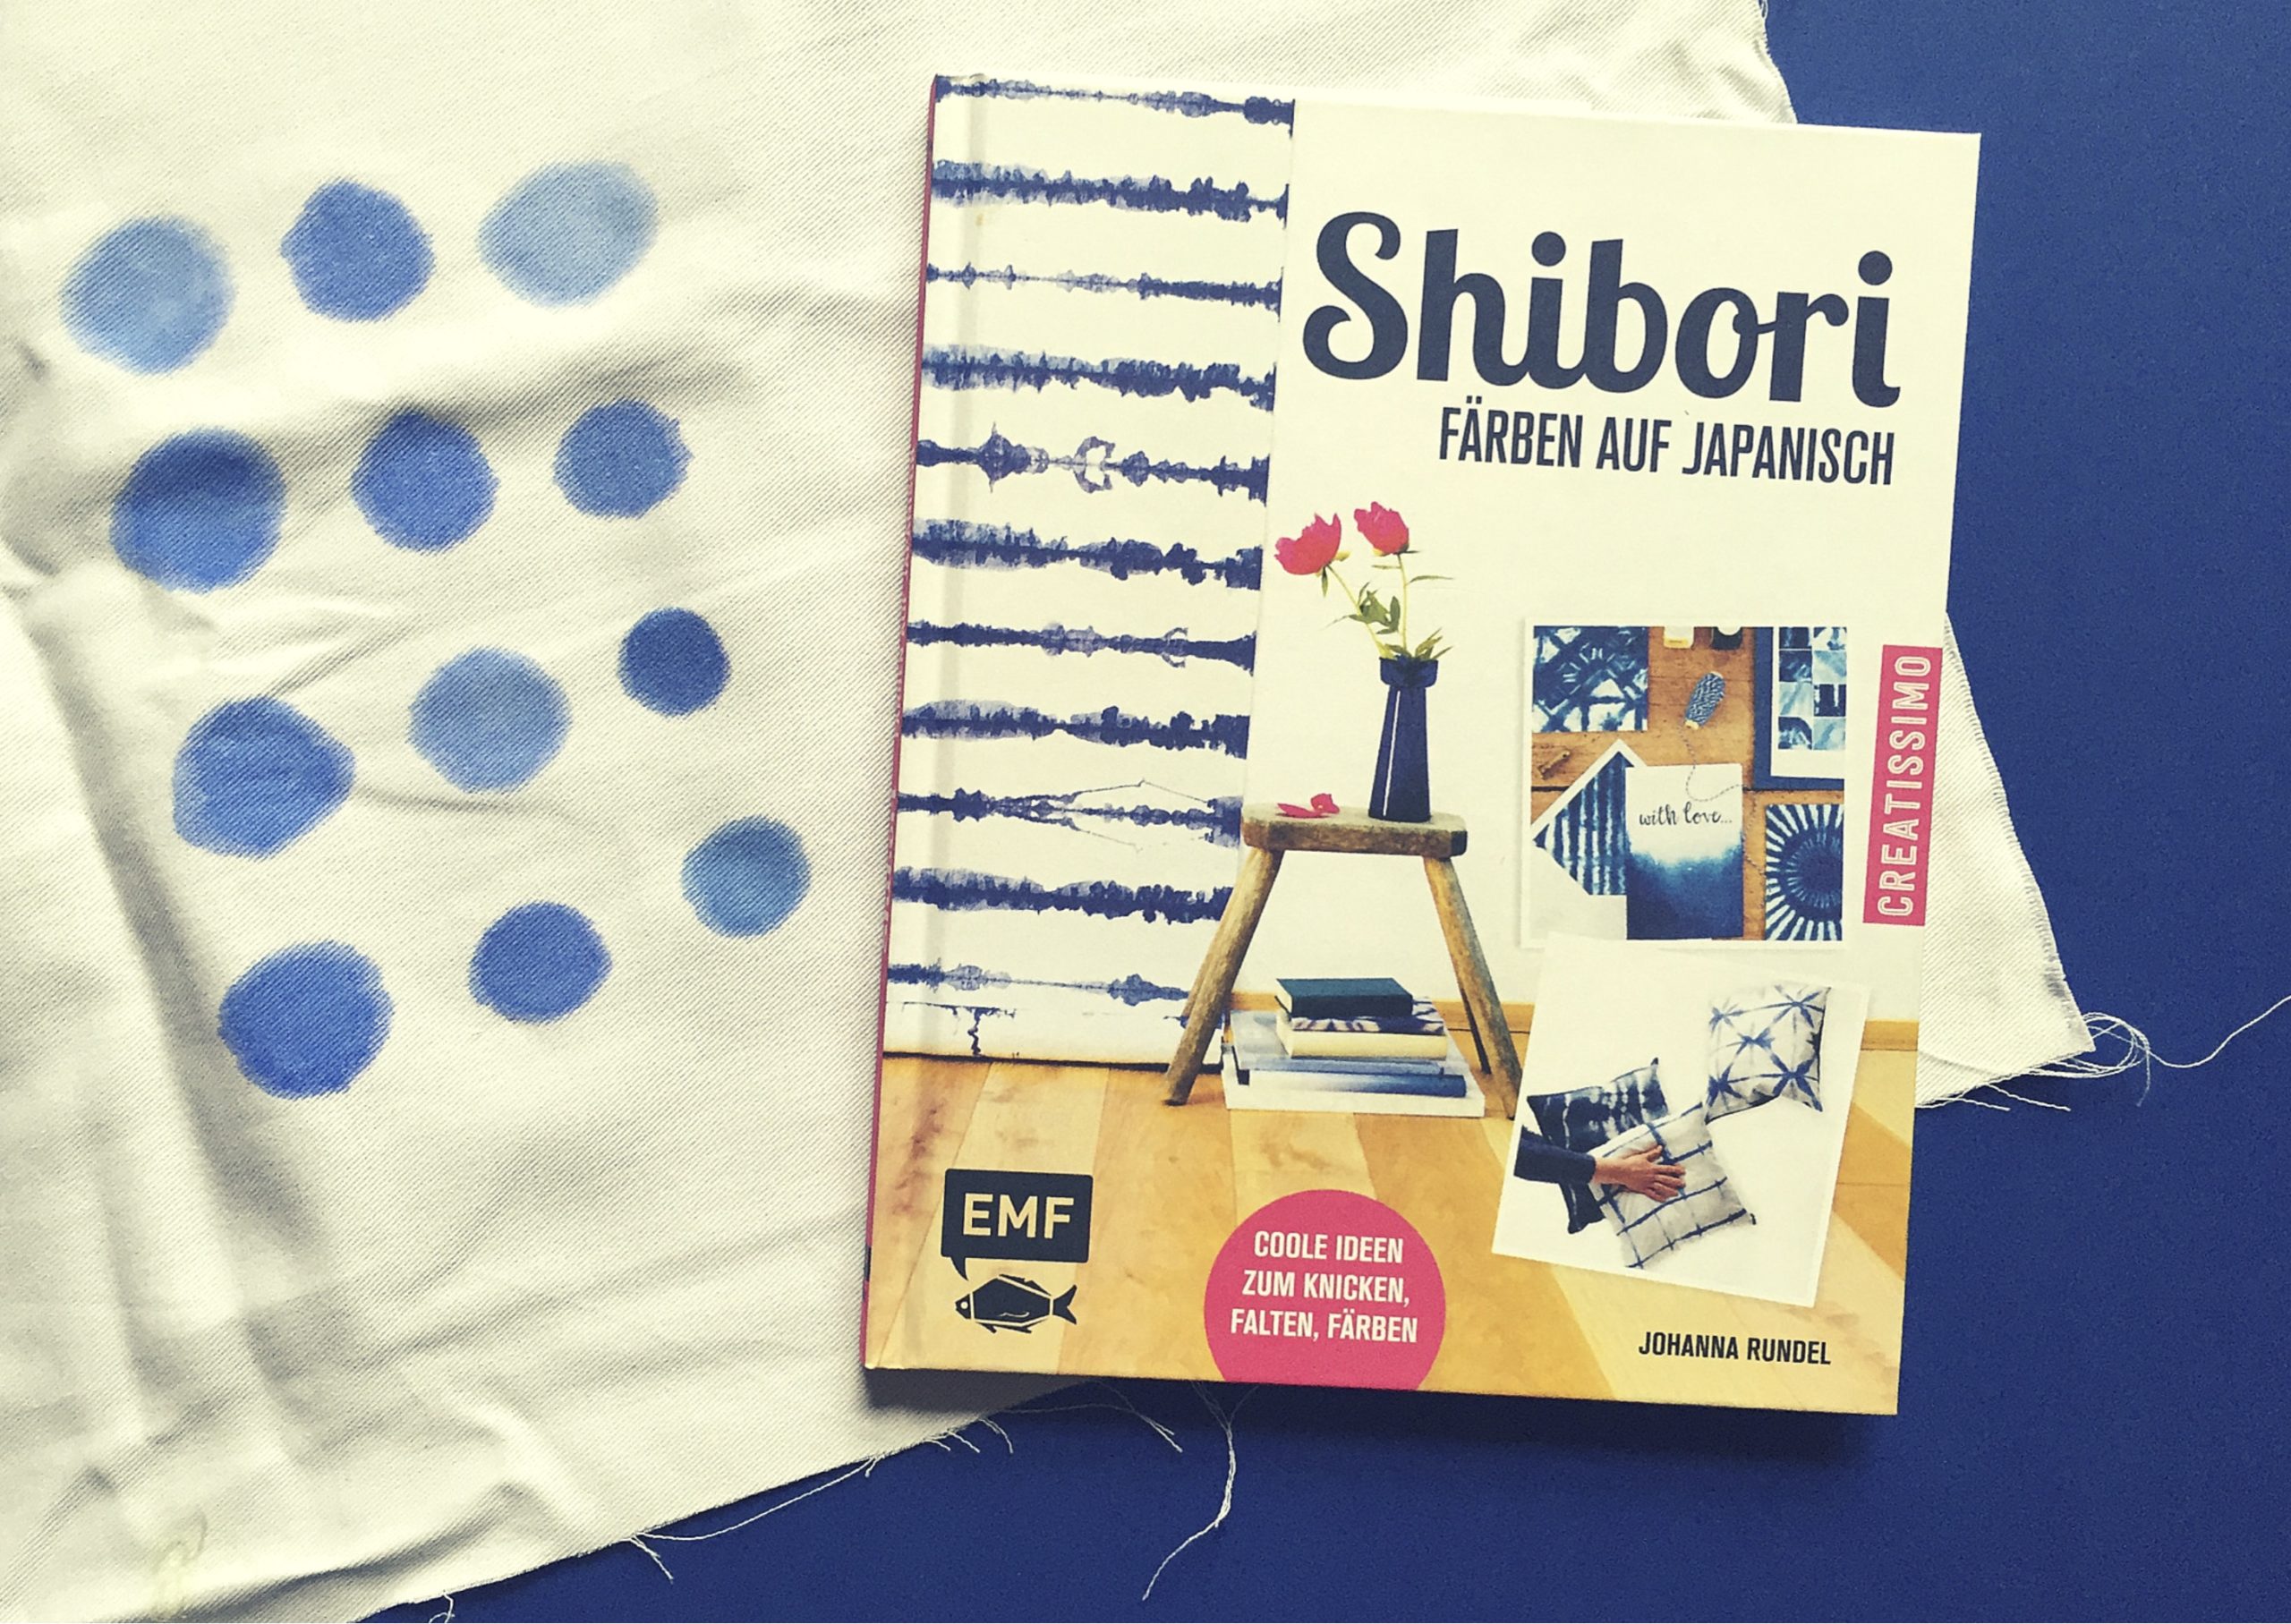 Shibori japanische Textilgestaltung https://www.meinesvenja.de/wp/